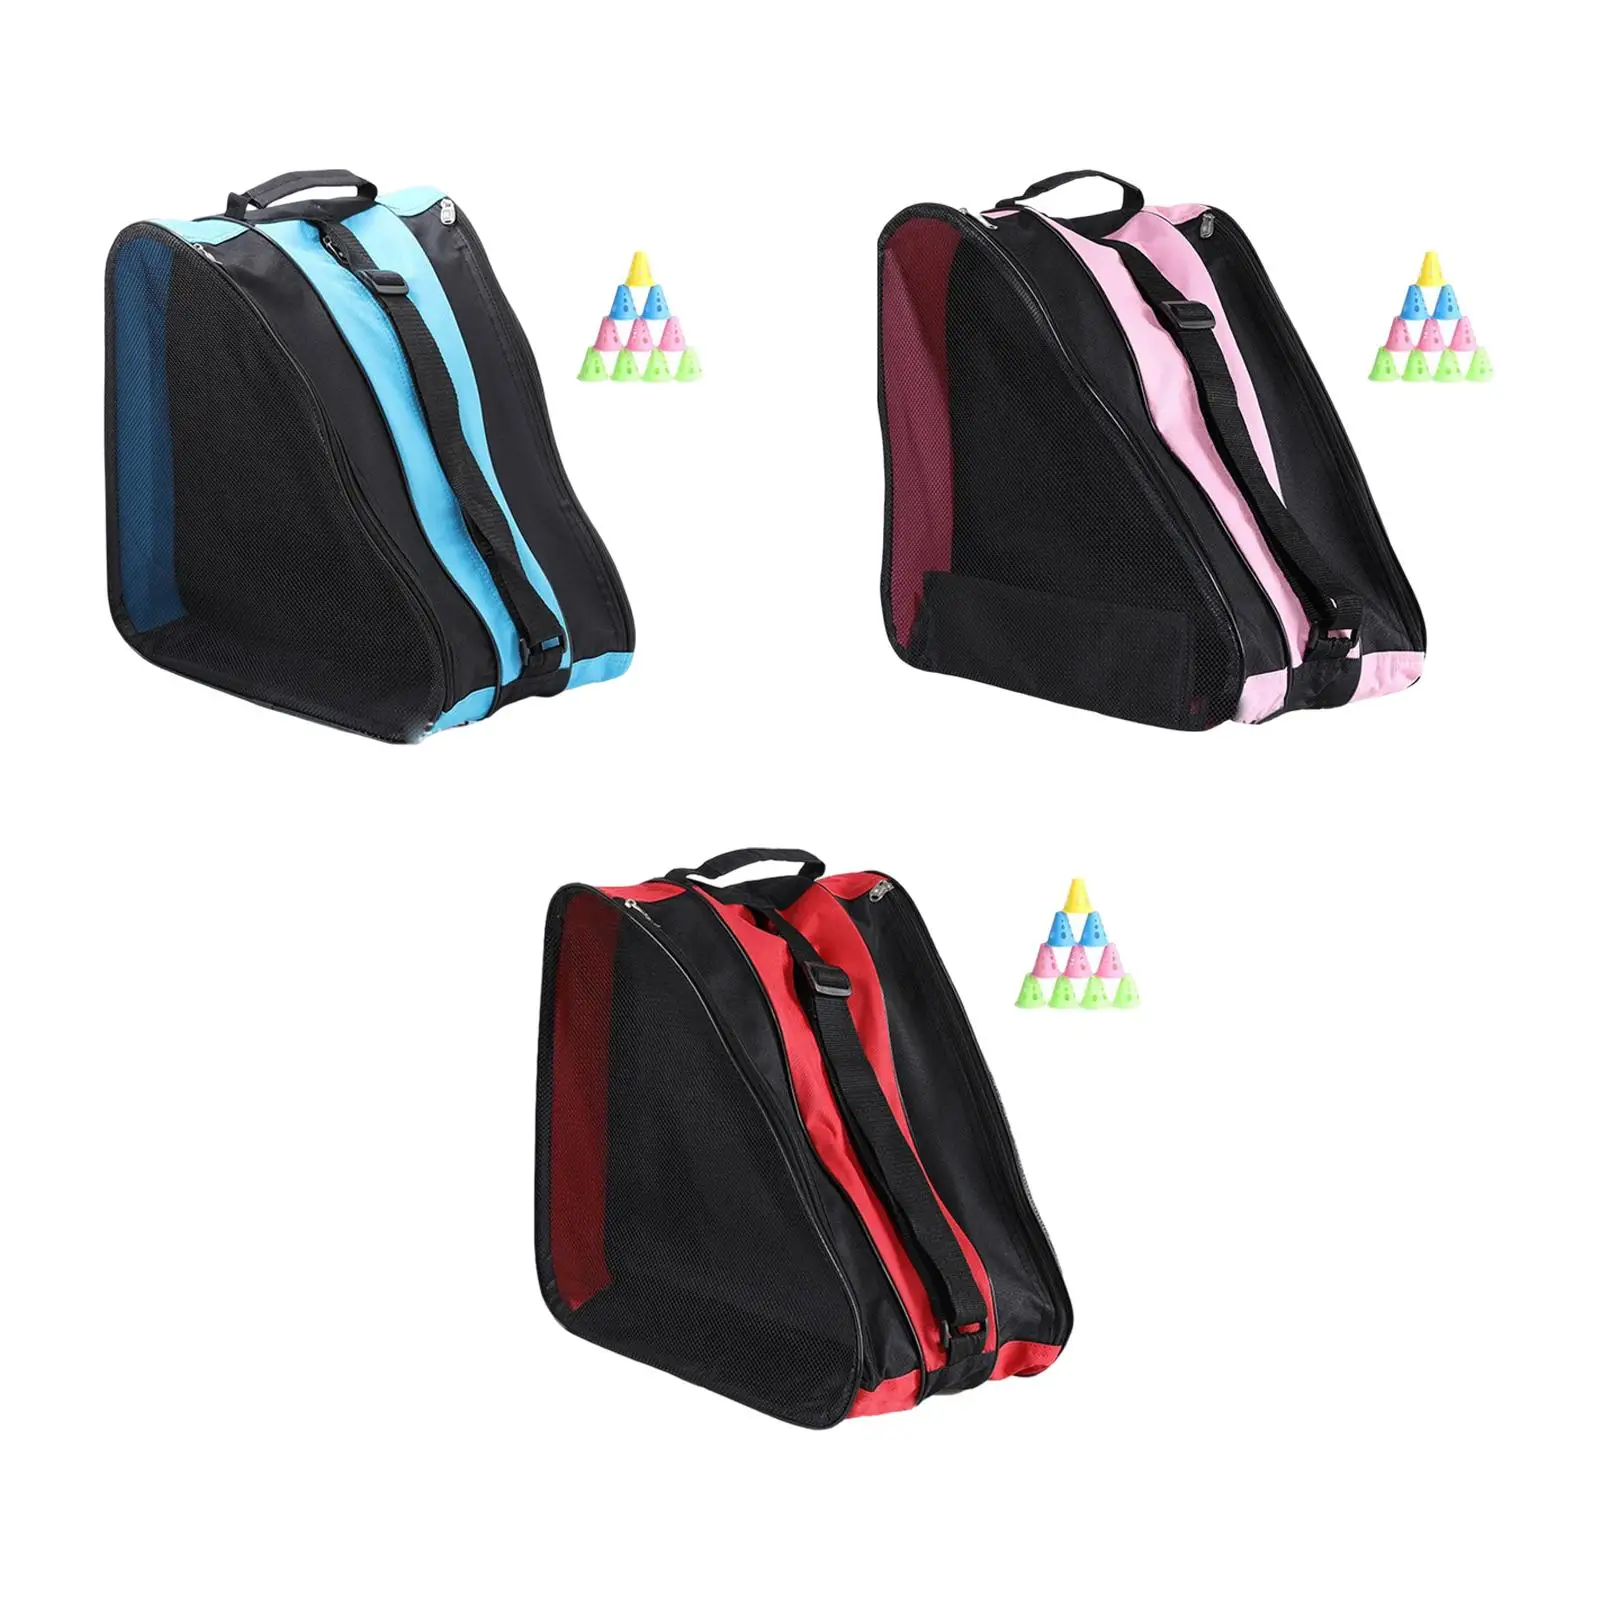 Прочные сумки для роликовых коньков, дышащие сумки для коньков с регулируемым плечевым ремнем и верхней ручкой, сумка для роликовых коньков для мальчика и девочки